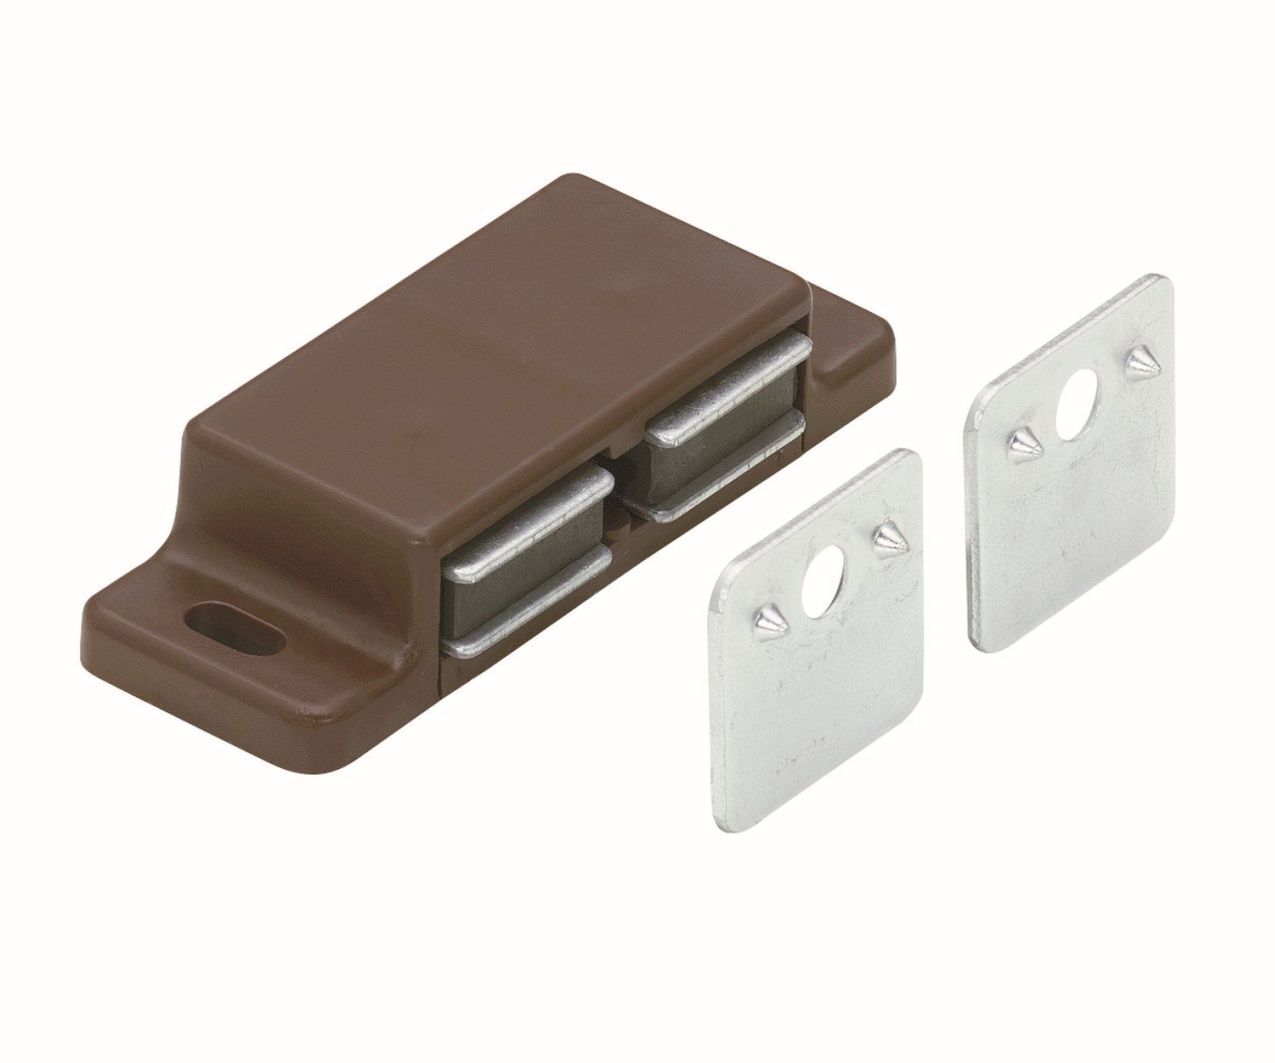 Magnetschnäpper 2x2-3 kg, mit zwei Gegenplatten für zwei Türen, 58 x 14 x 21 mm, 2x2-3 kg, verzinkt, braun